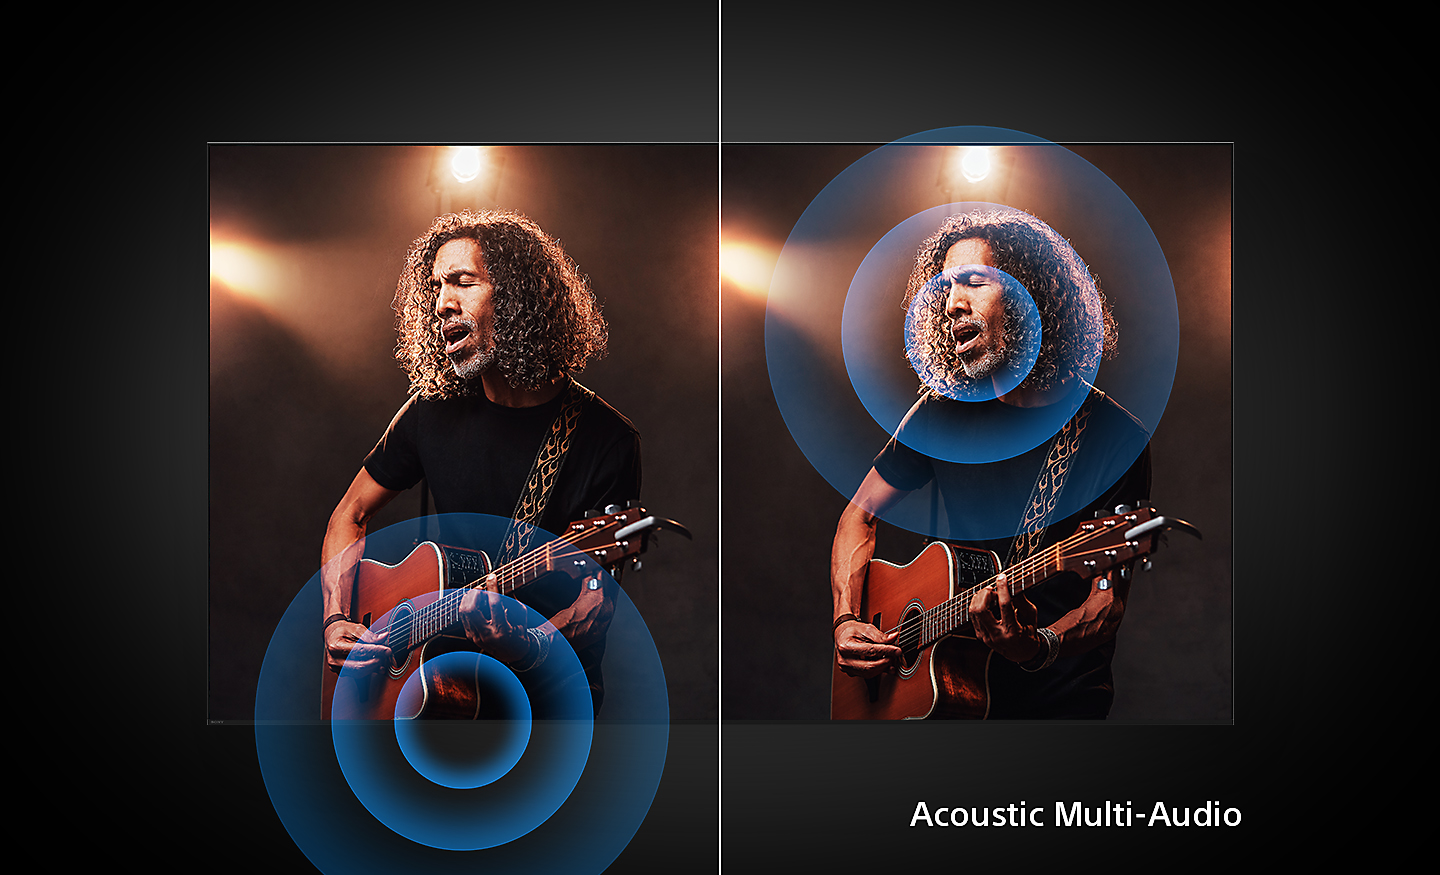 Delt skjermbilde av en gitarist hvor det venstre bildet viser hvordan en konvensjonell TV sender ut lyd fra undersiden av skjermen, og det høyre bildet viser hvordan en BRAVIA-TV med Acoustic Multi-Audio+ sender ut lyd fra gitaristen for mer realisme